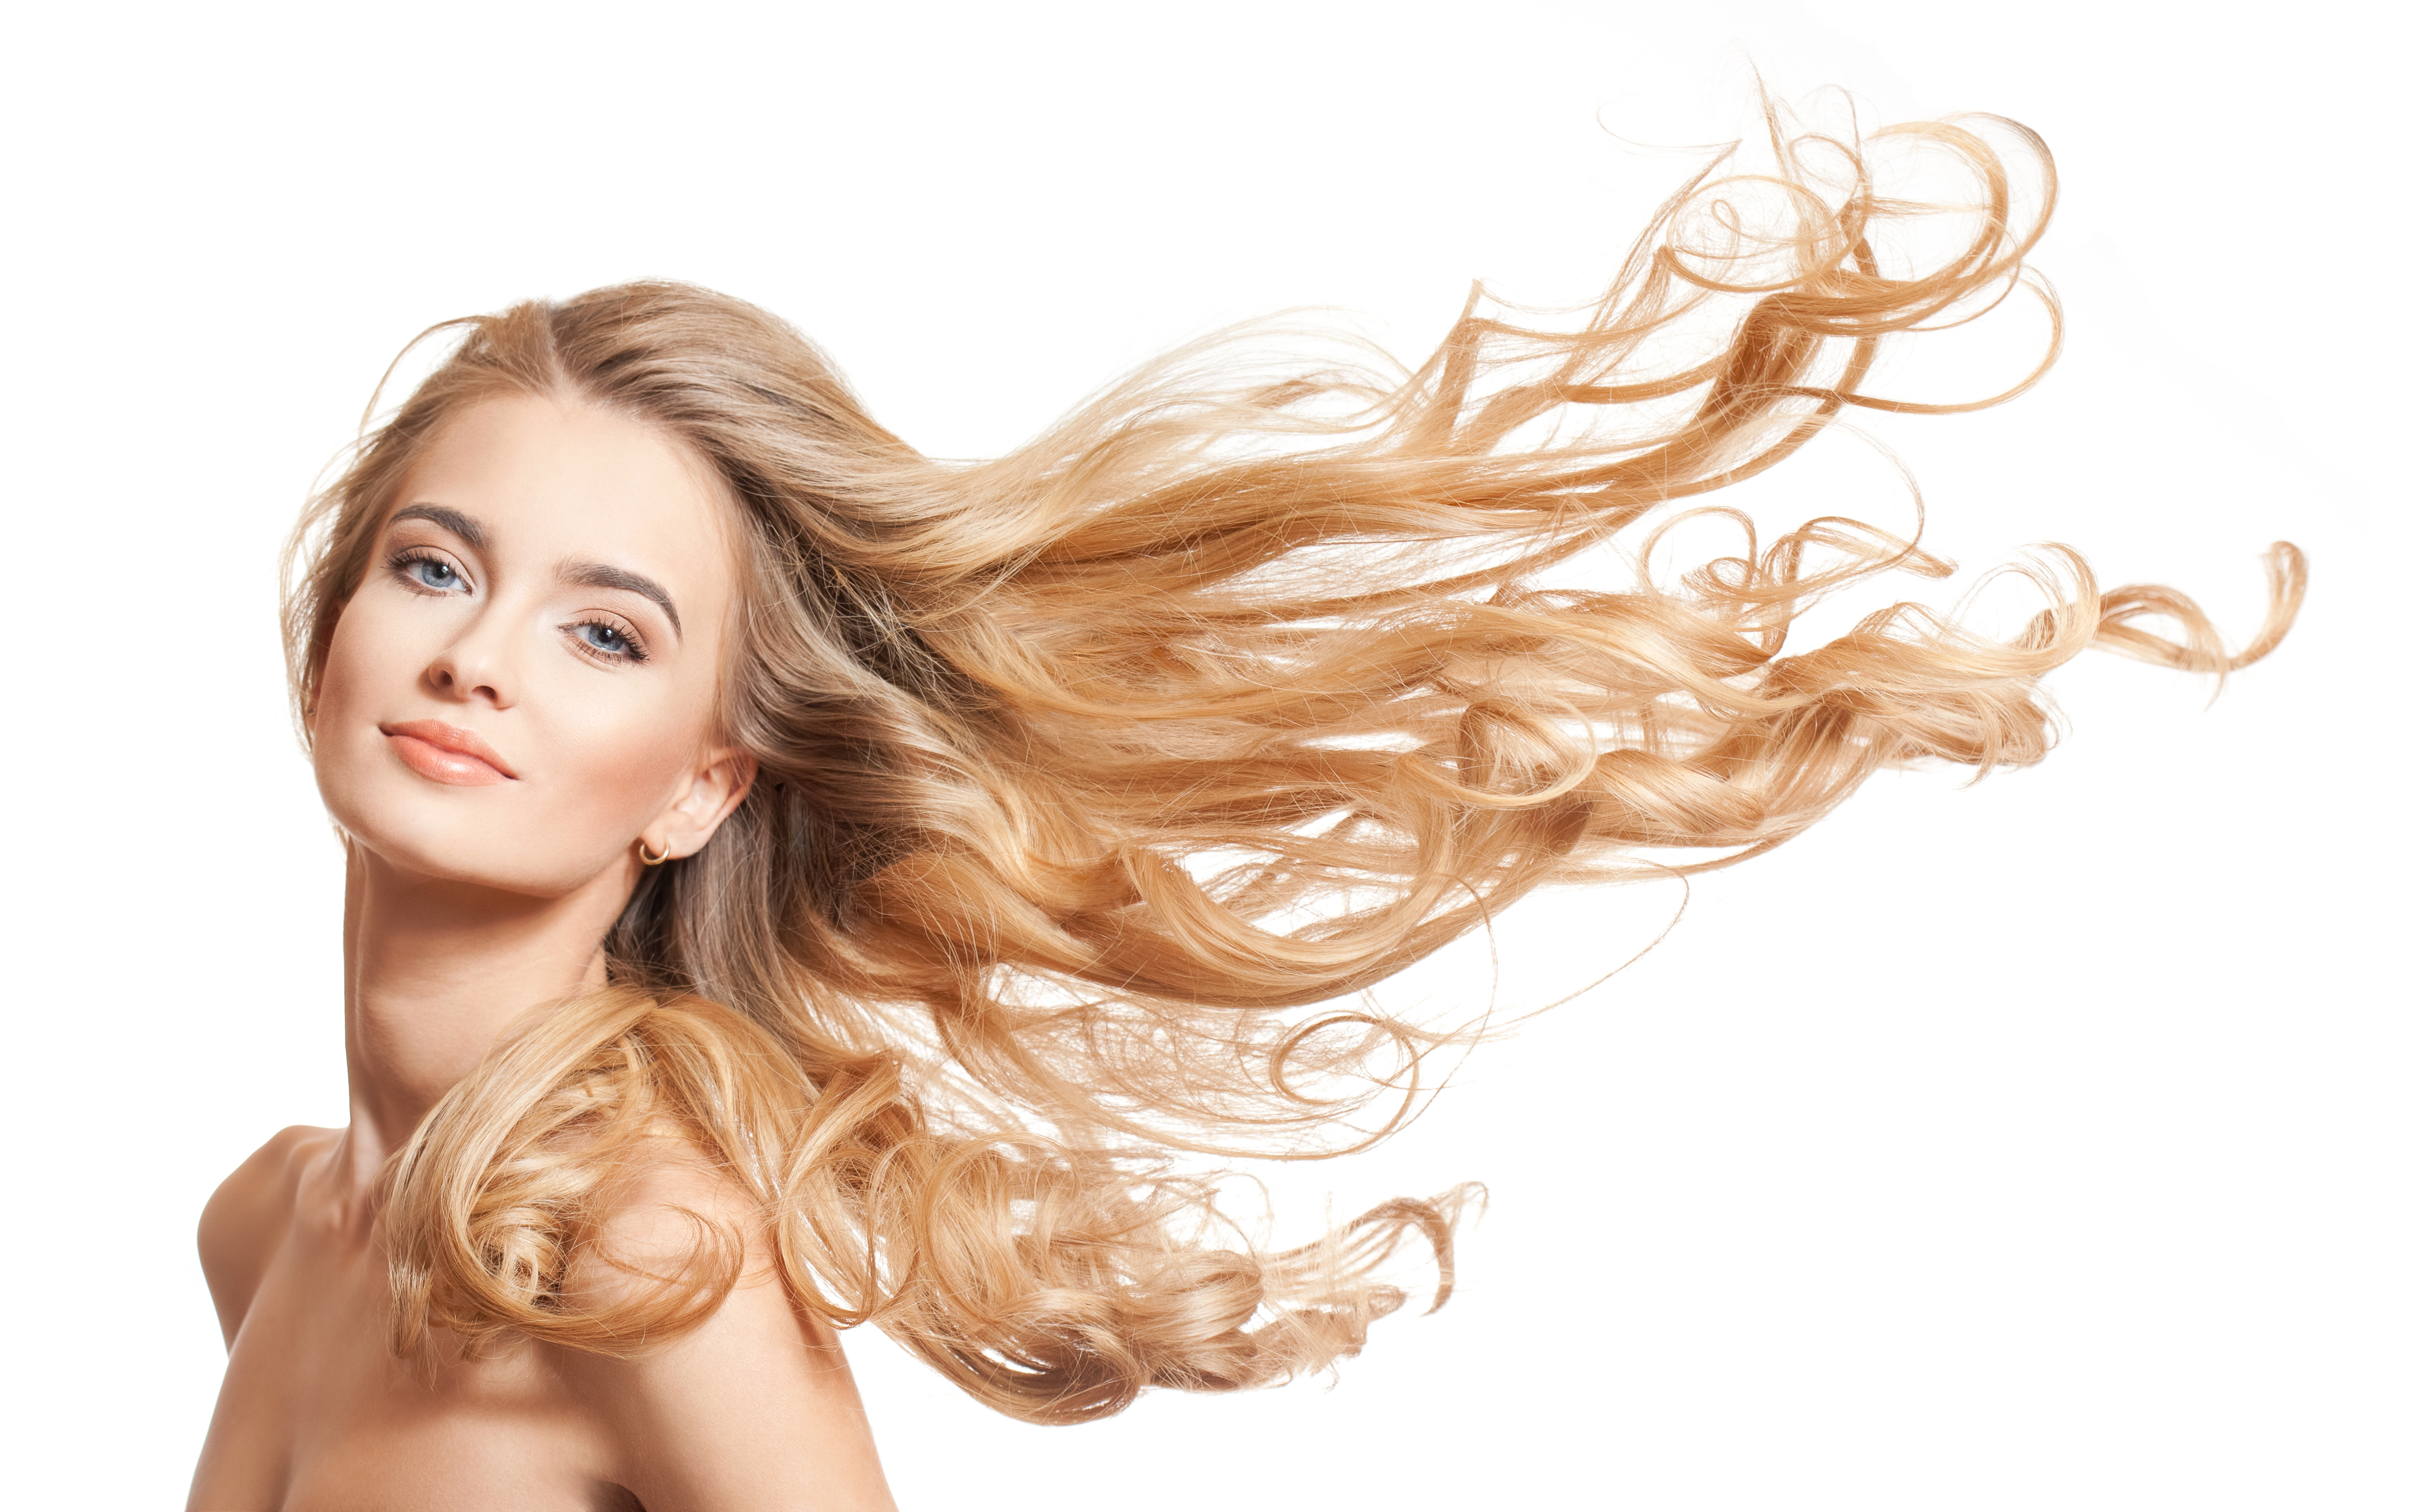 Eine Frau mit langen, blonden Haaren | Quelle: Shutterstock